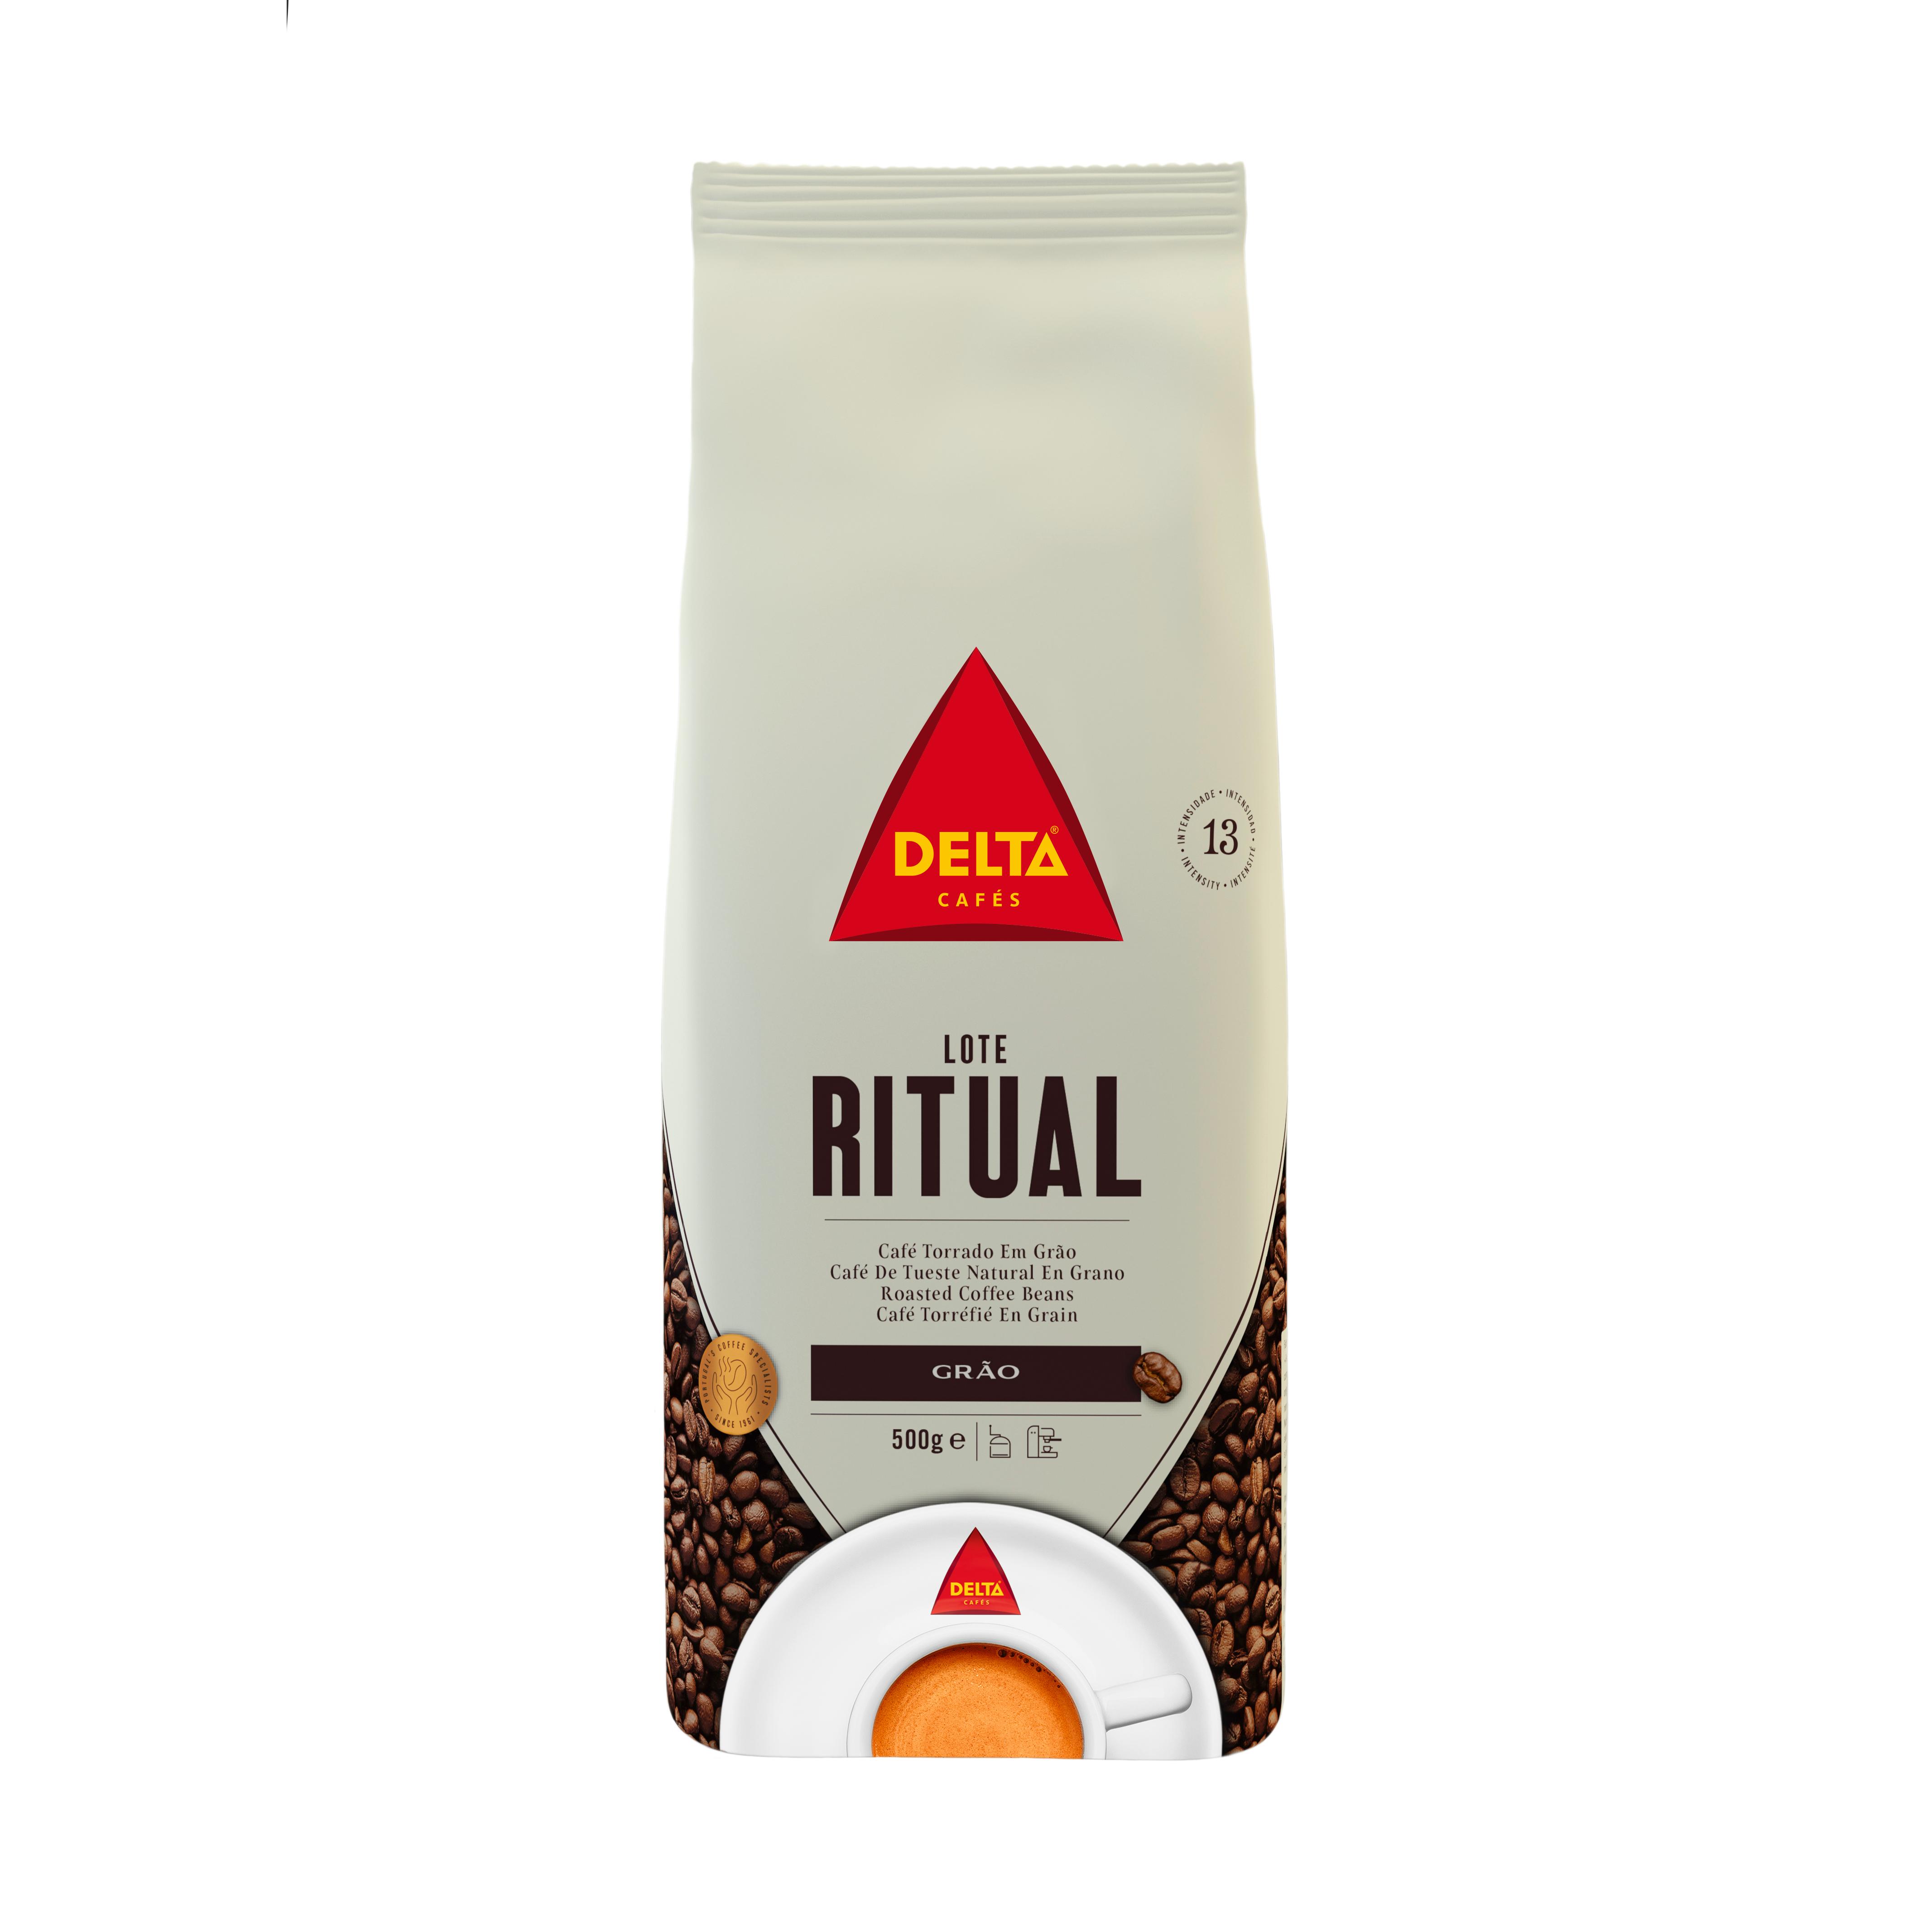 Cafe molido natural 100% 250 gramos arabica biocop